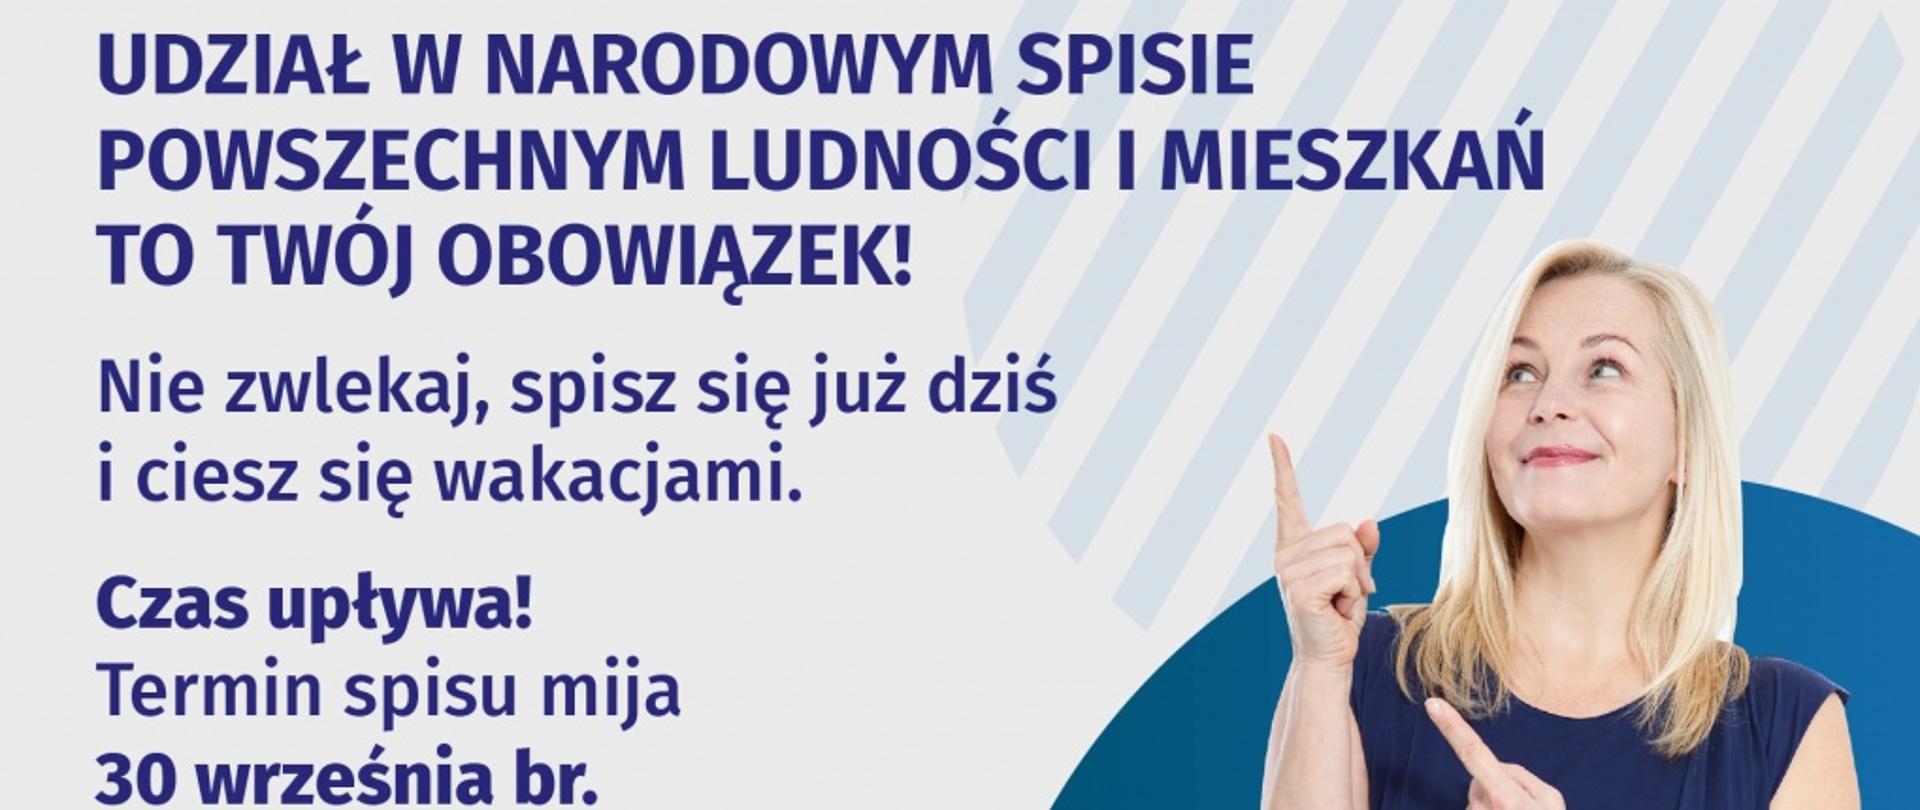 Grafika promująca spis powszechny - napisy przypominające o spisie, m.in. "udział w Narodowym Spisie Powszechnym Ludności i Mieszkań to Twój obowiązek", hasło "liczymy się dla Polski" i fotografia kobiety spoglądającej i wskazującej na te informacje